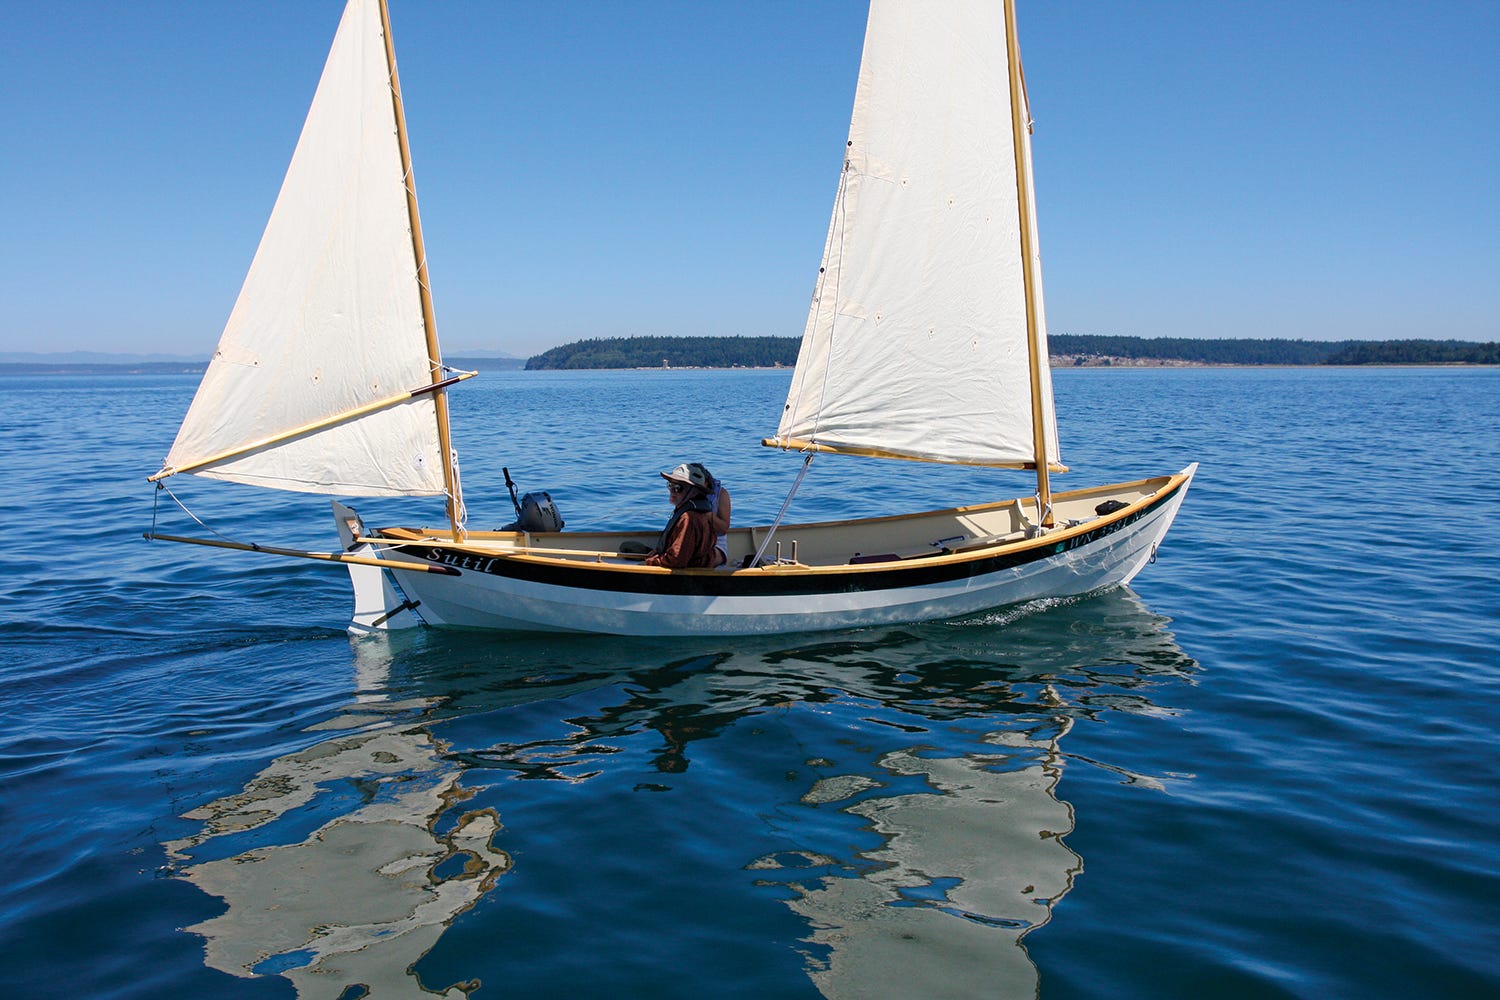 caledonia yawl sailboat